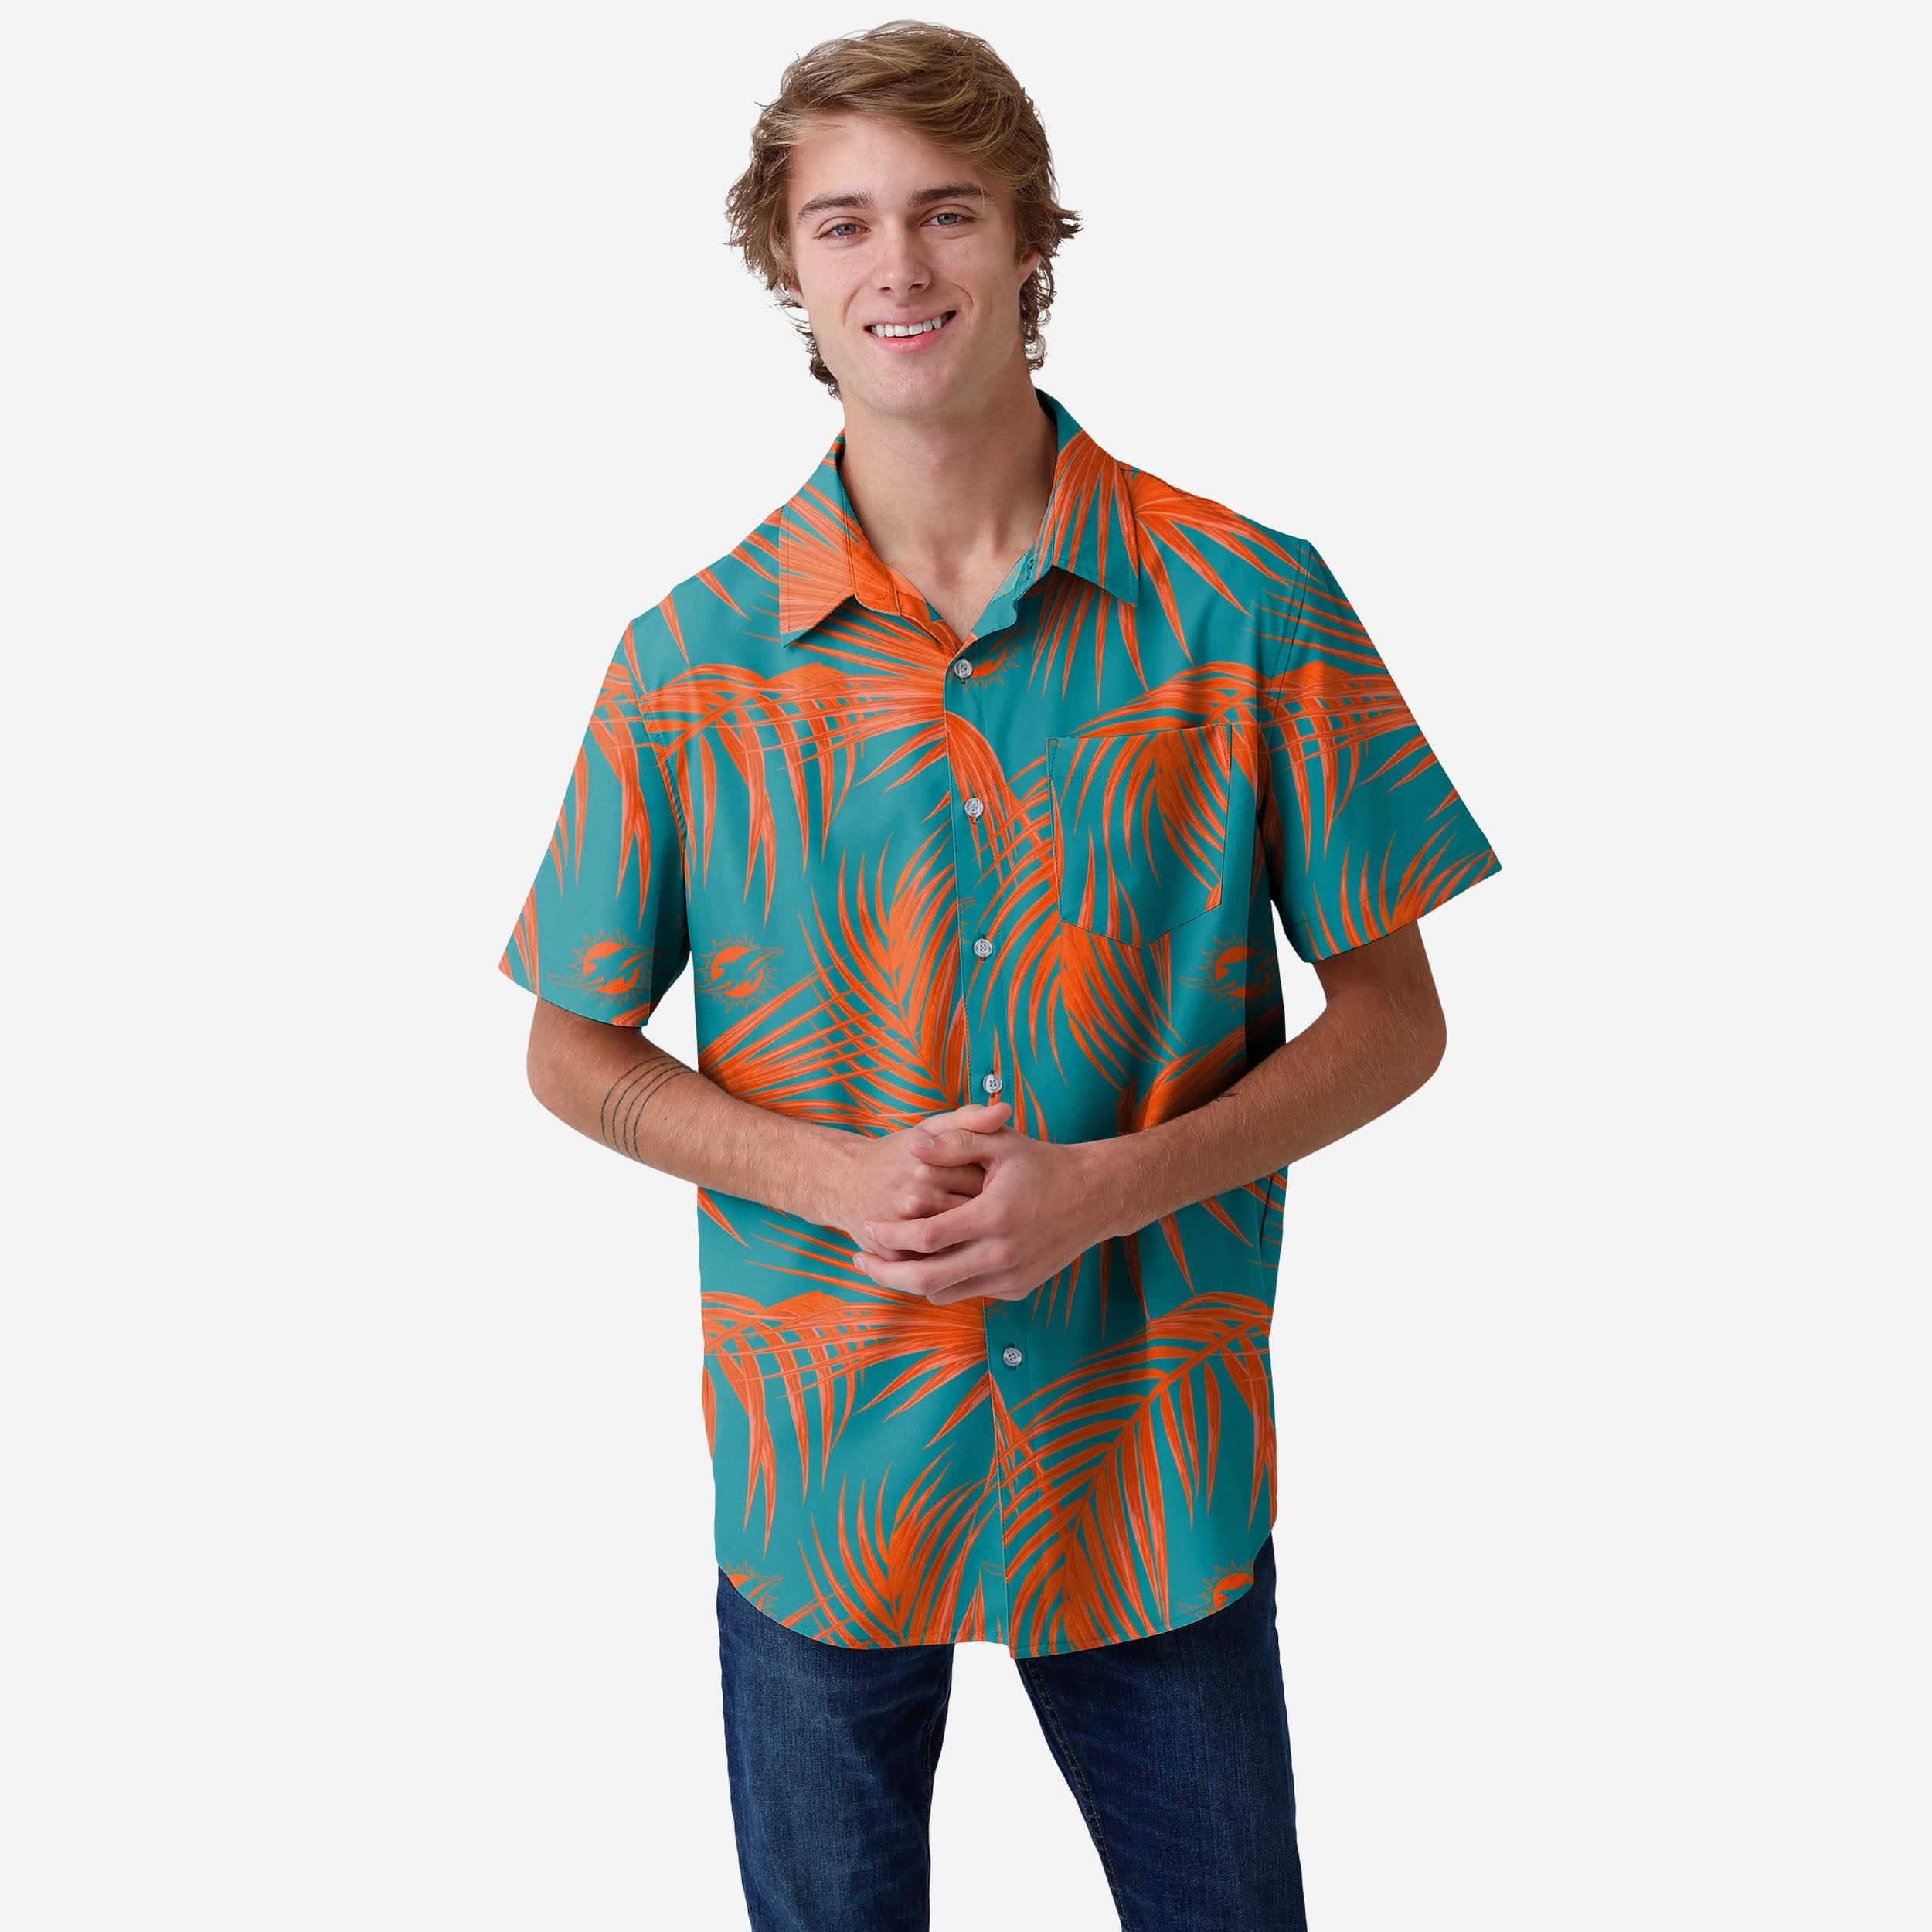 Louisville City FC Hawaiian Shirt, Flip Flops - LIMITED EDITION